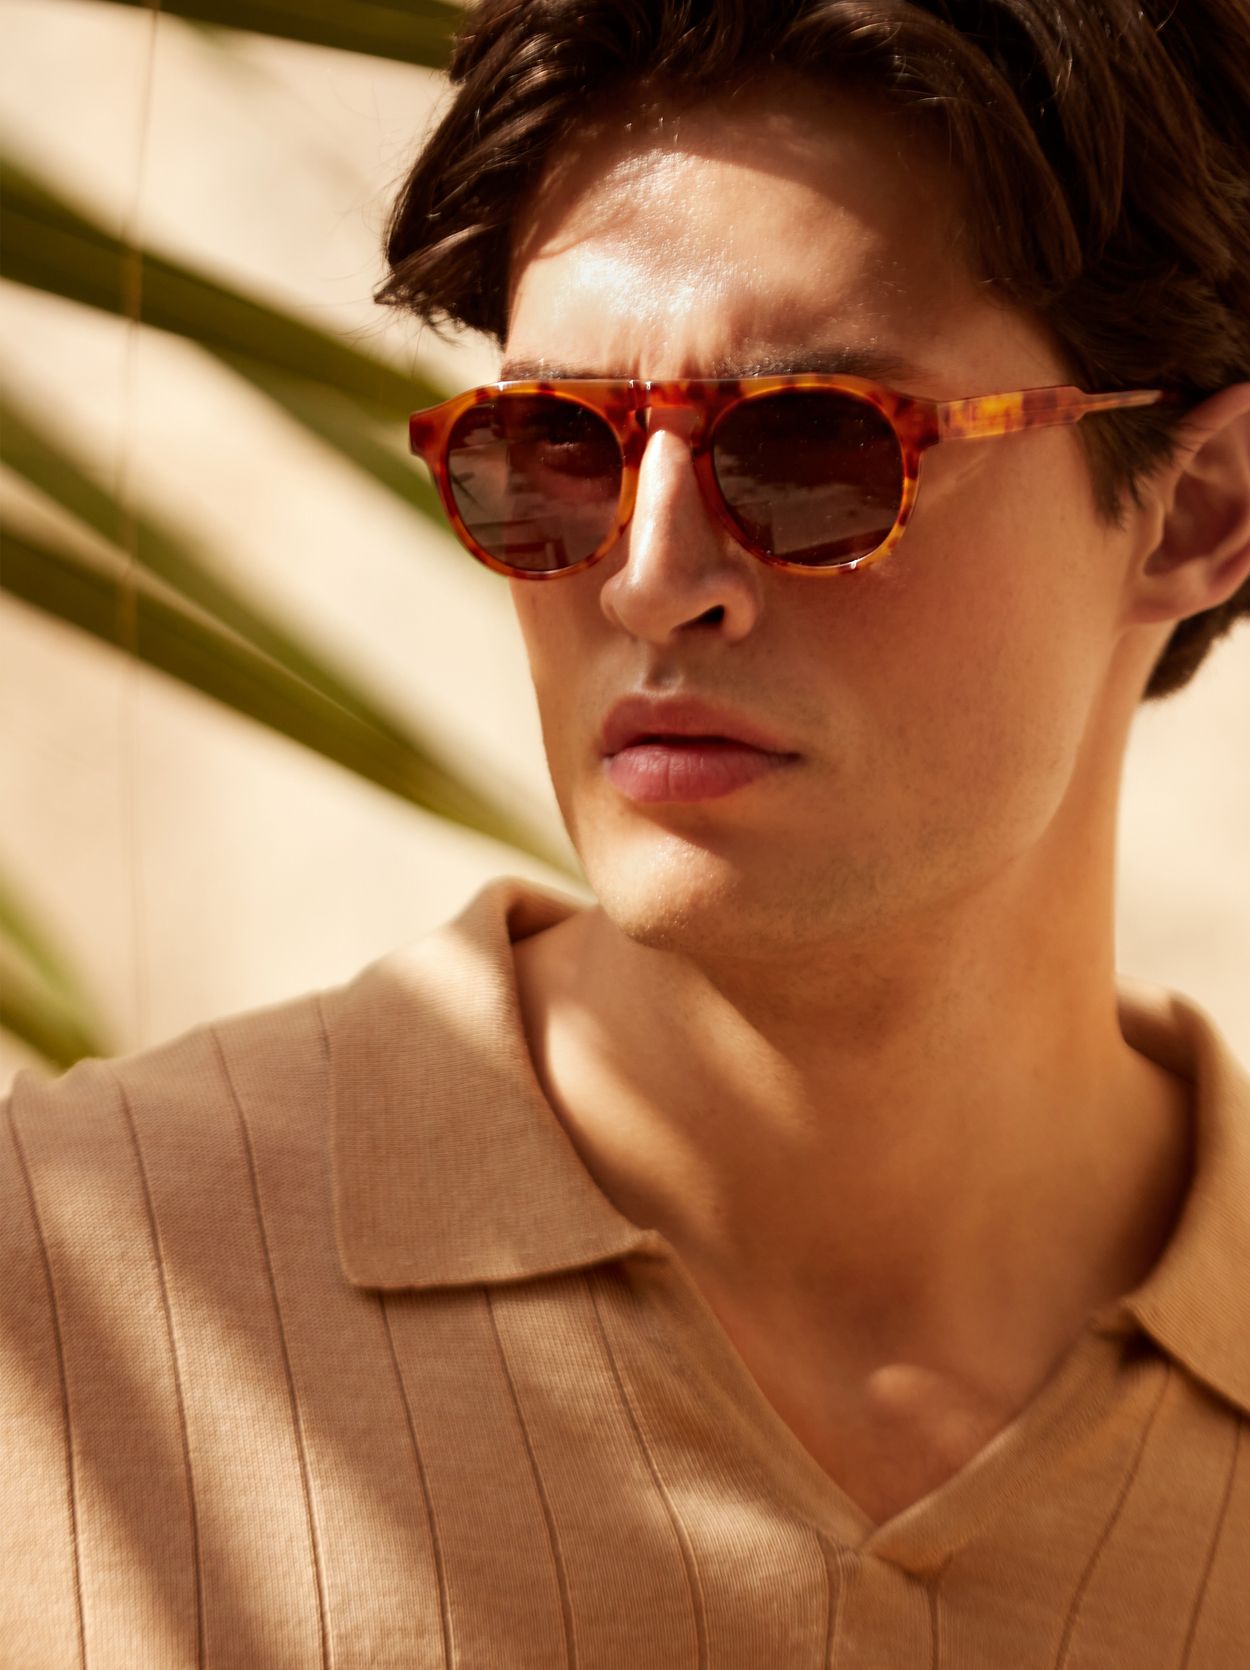 Brown Sunglasses Marbella